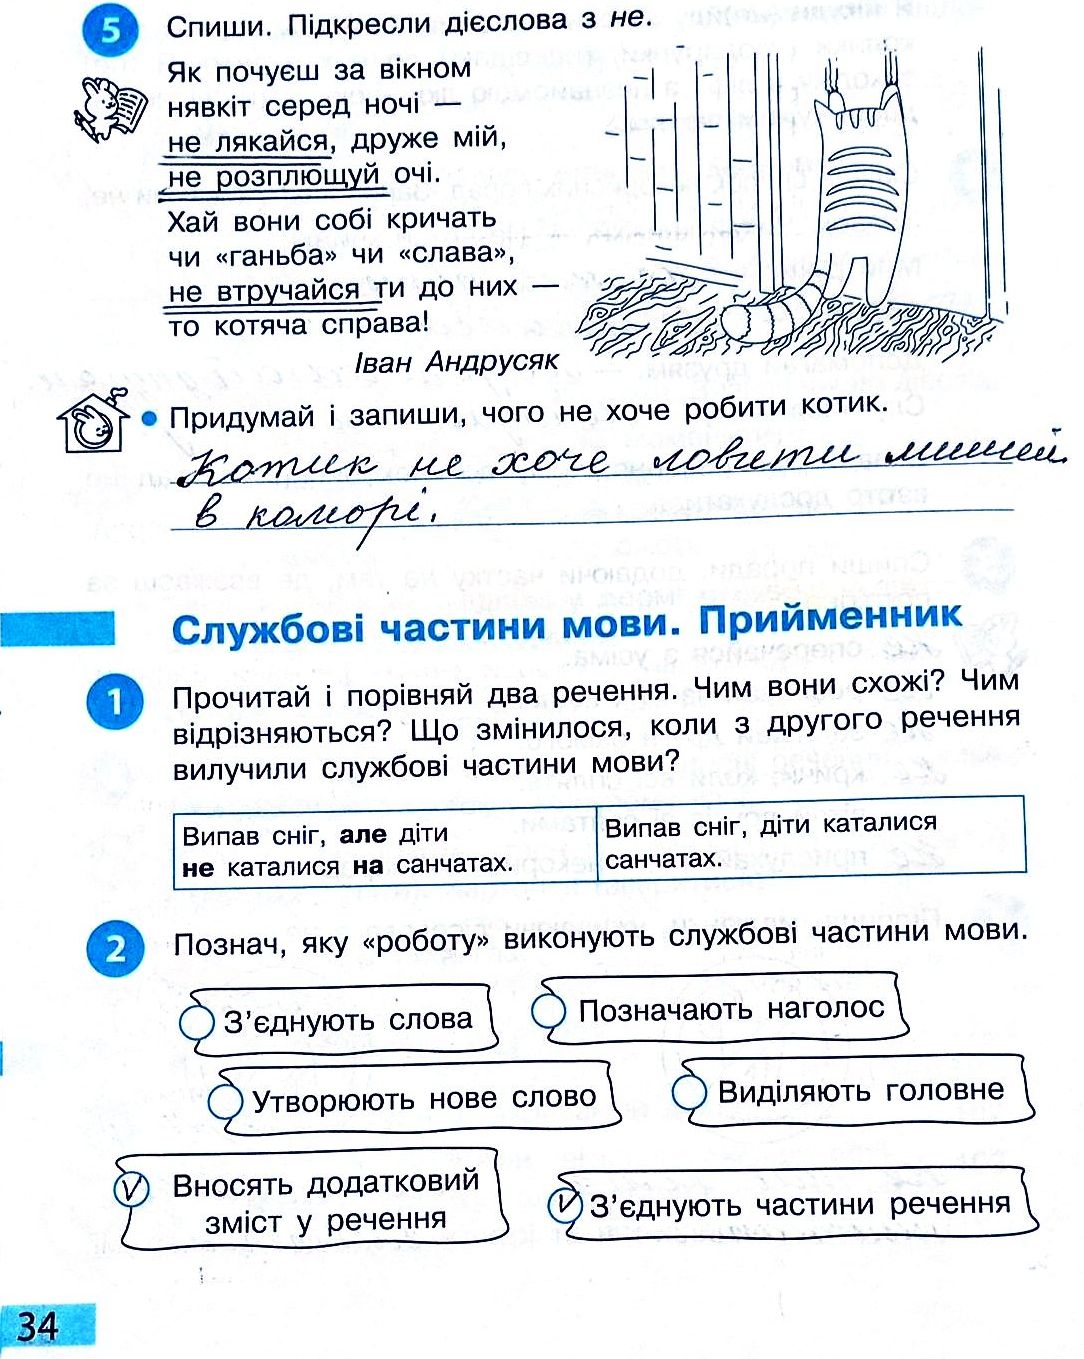 Сторінка 34 частина 2 гдз 3 клас робочий зошит українська мова Большакова